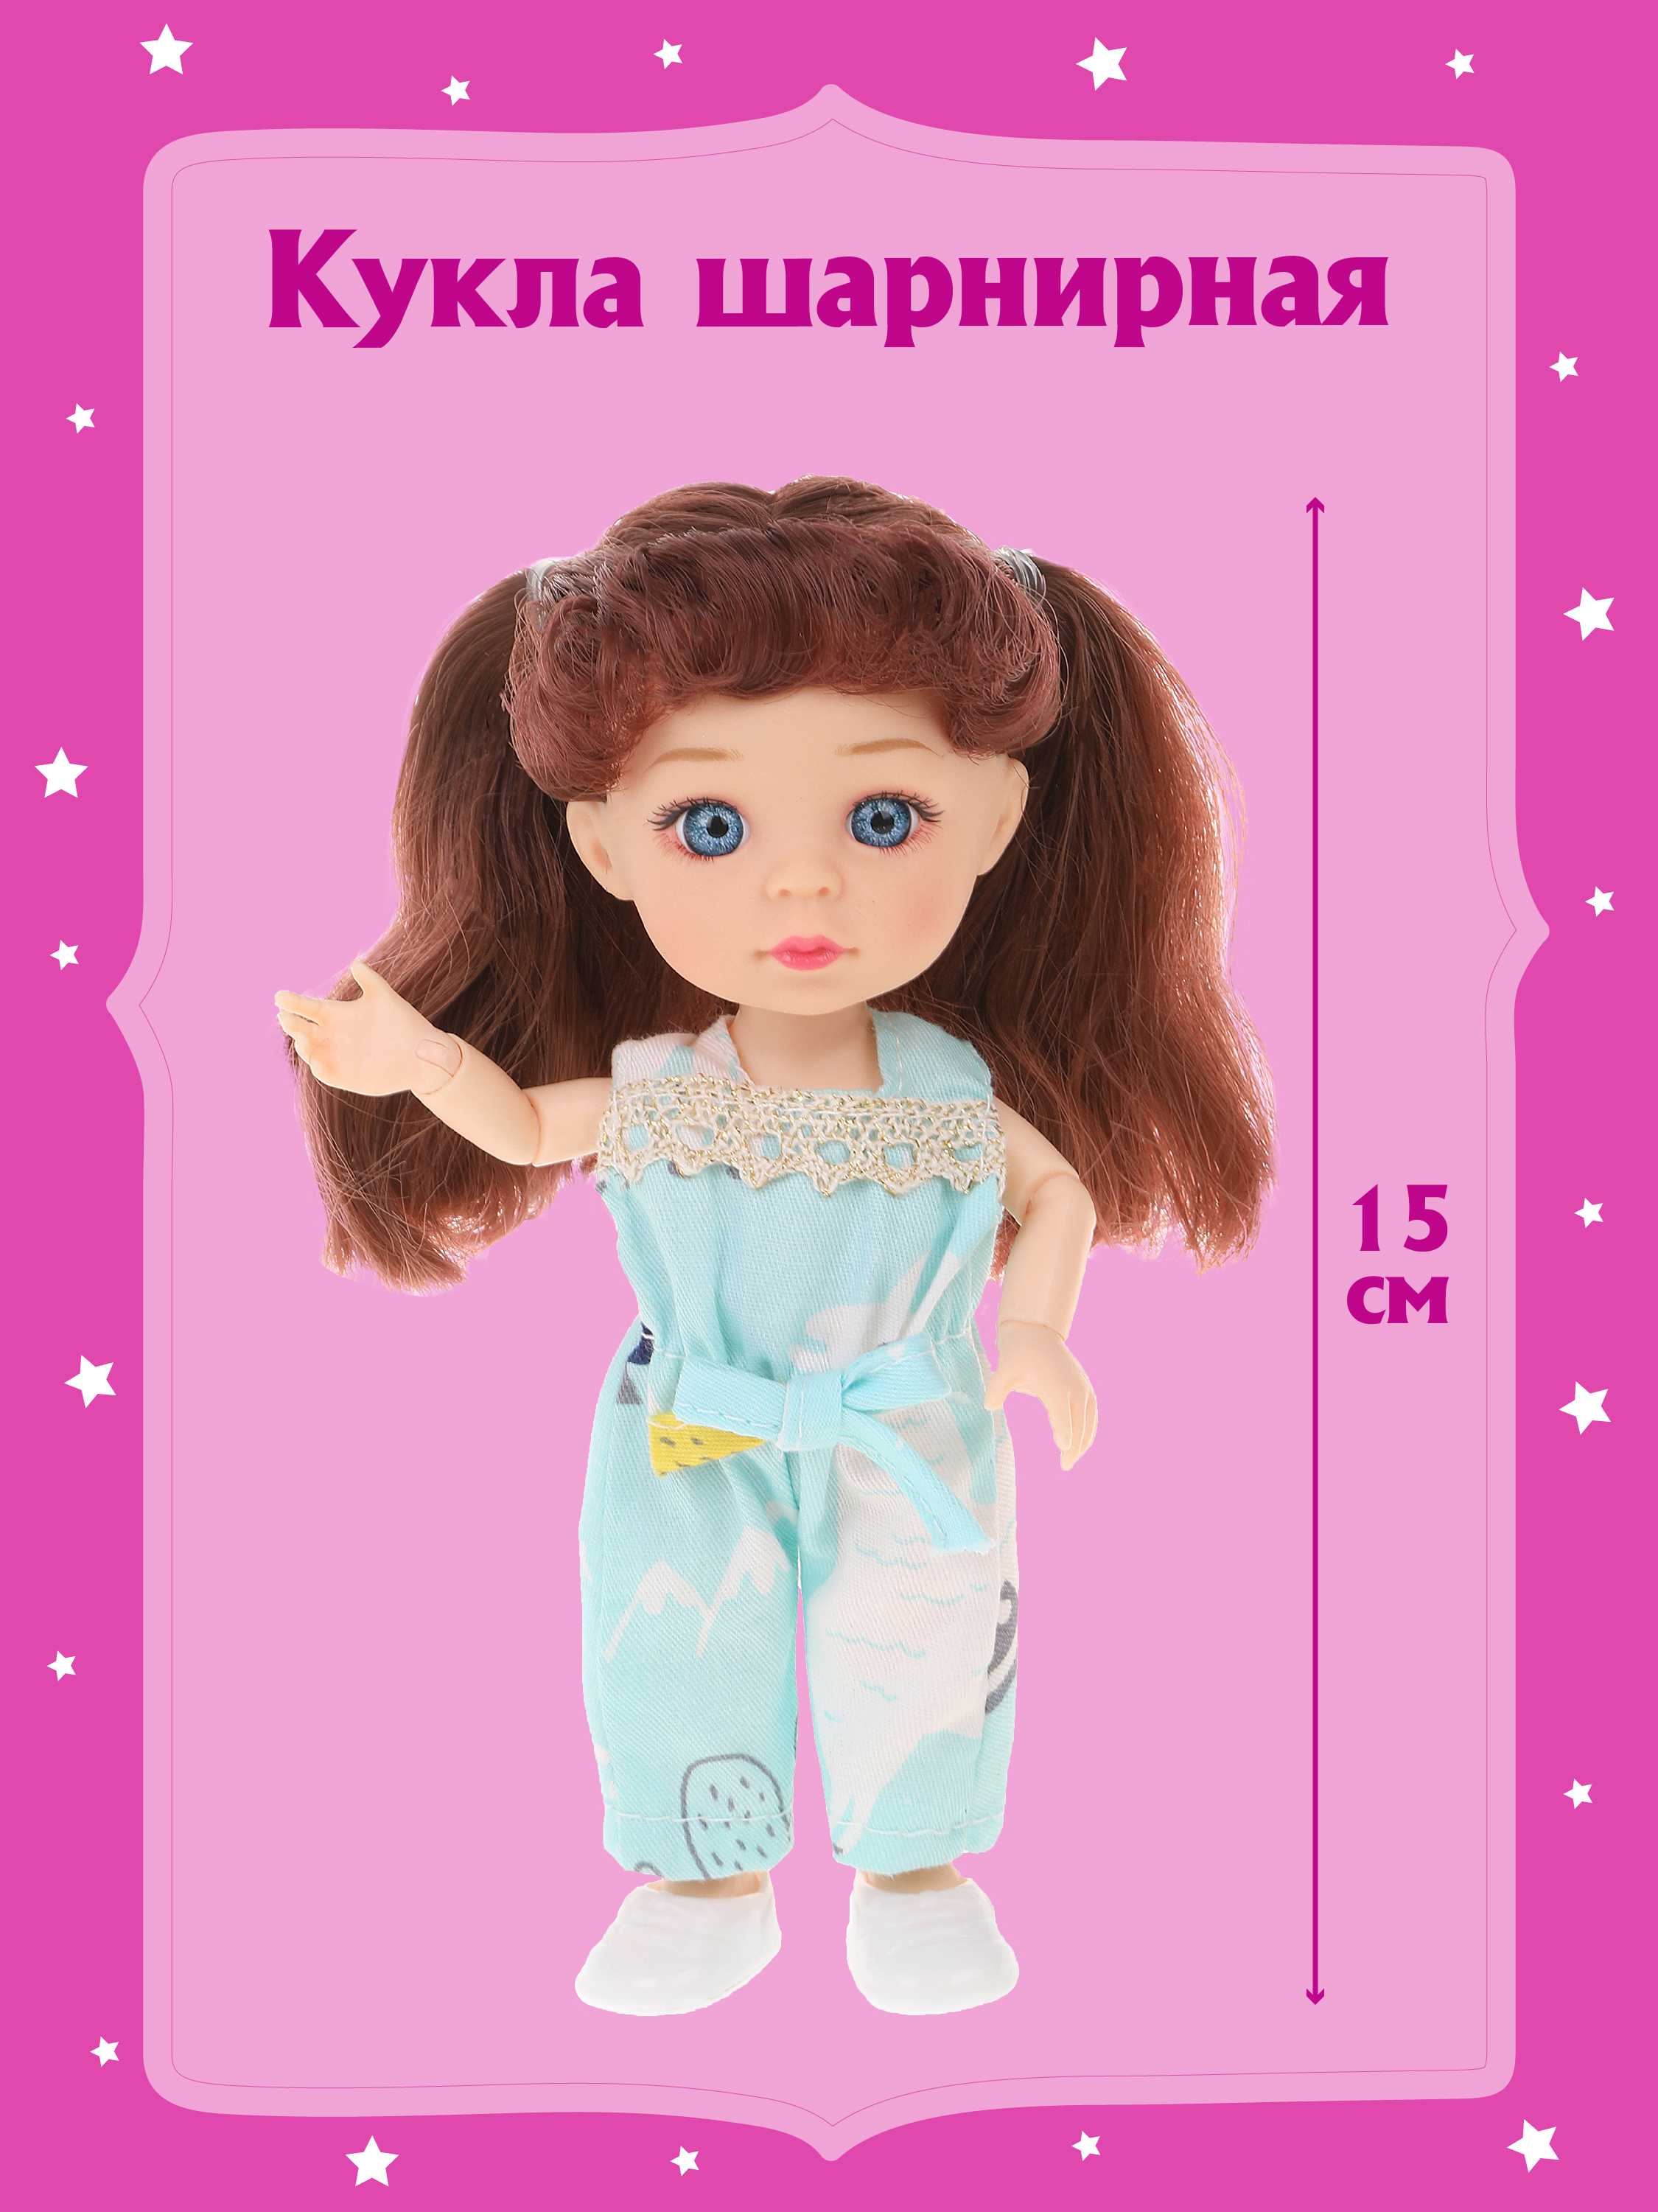 Шарнирная кукла для девочки Наша игрушка 15 см, 803603 велонасос beto пластик универсальная шарнирная головка т ручка 5 470364